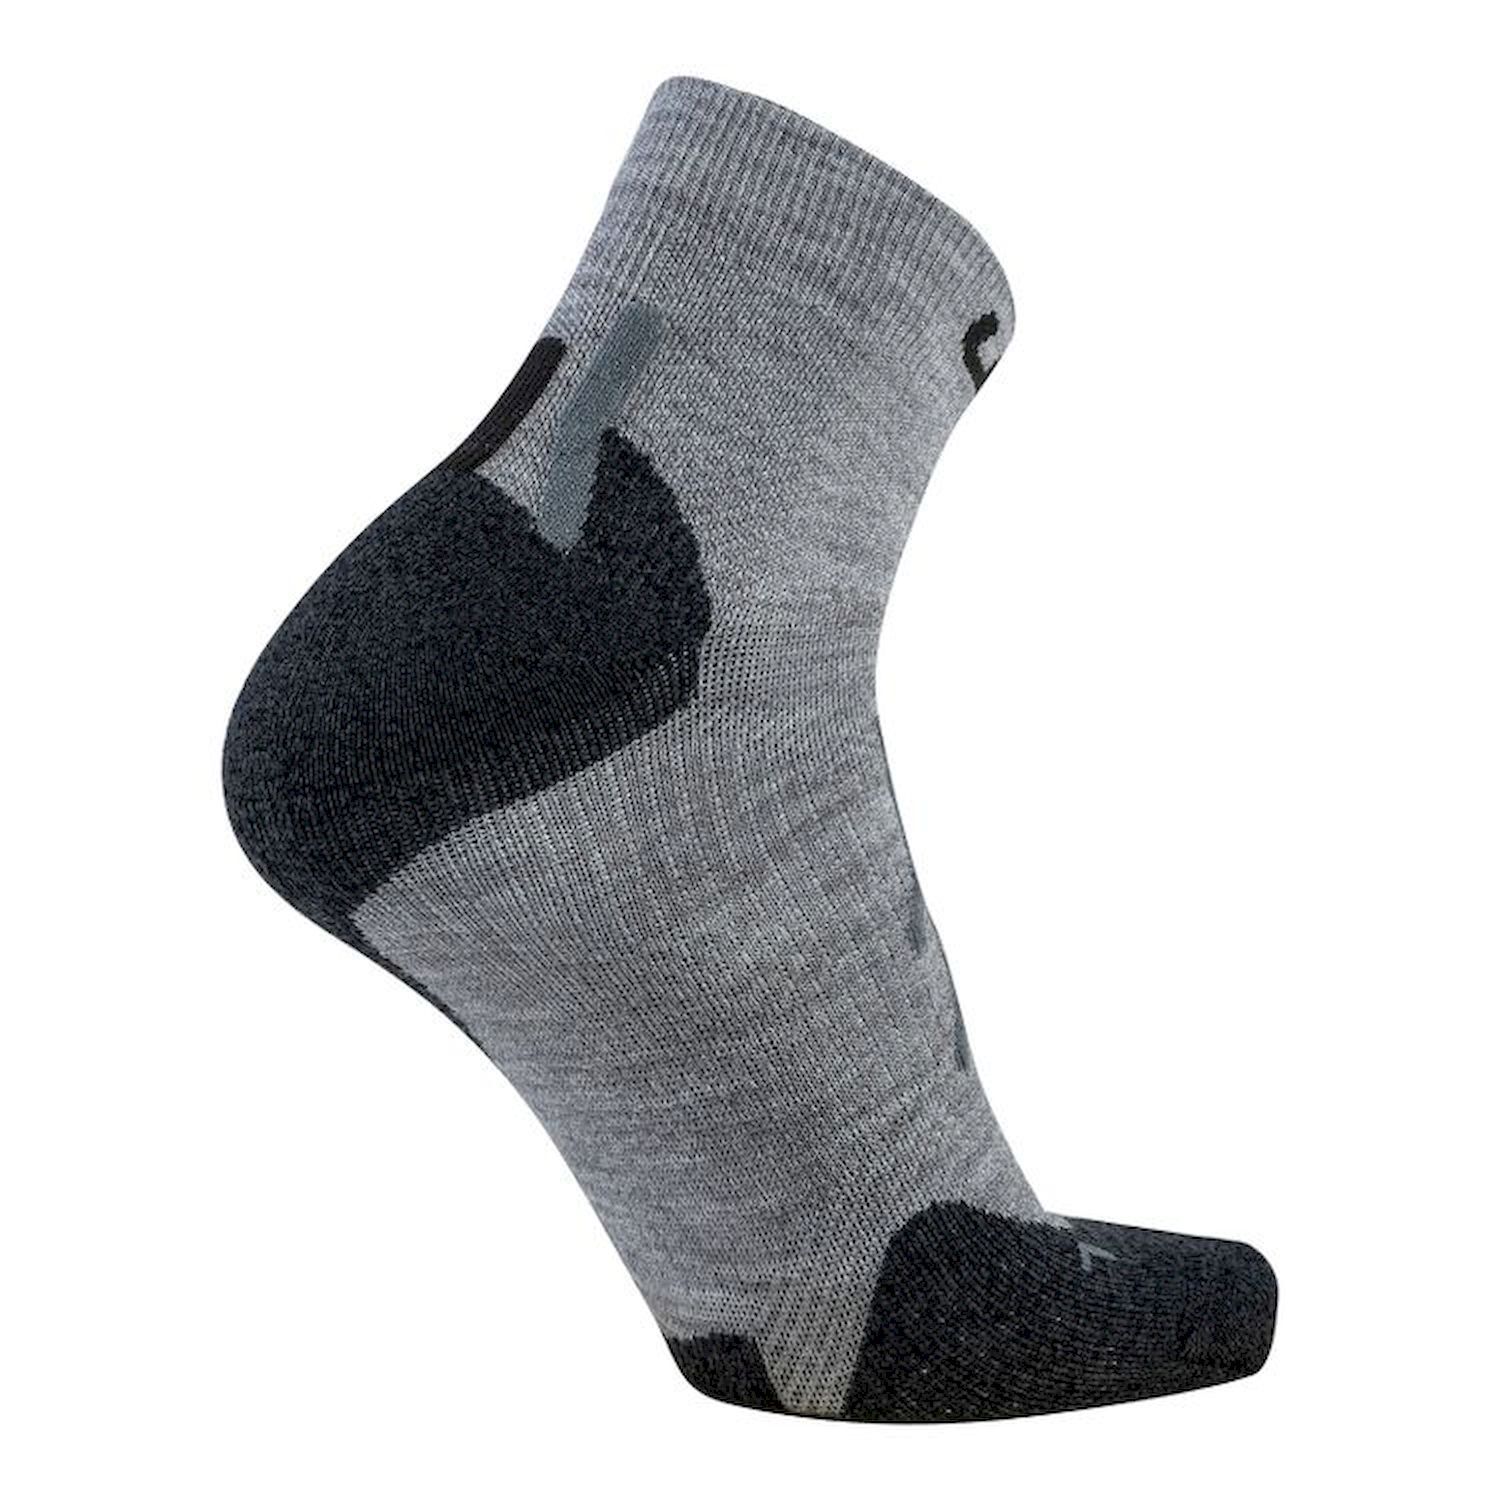 Uyn Trekking Approach Merino Socks - Hiking socks - Men's